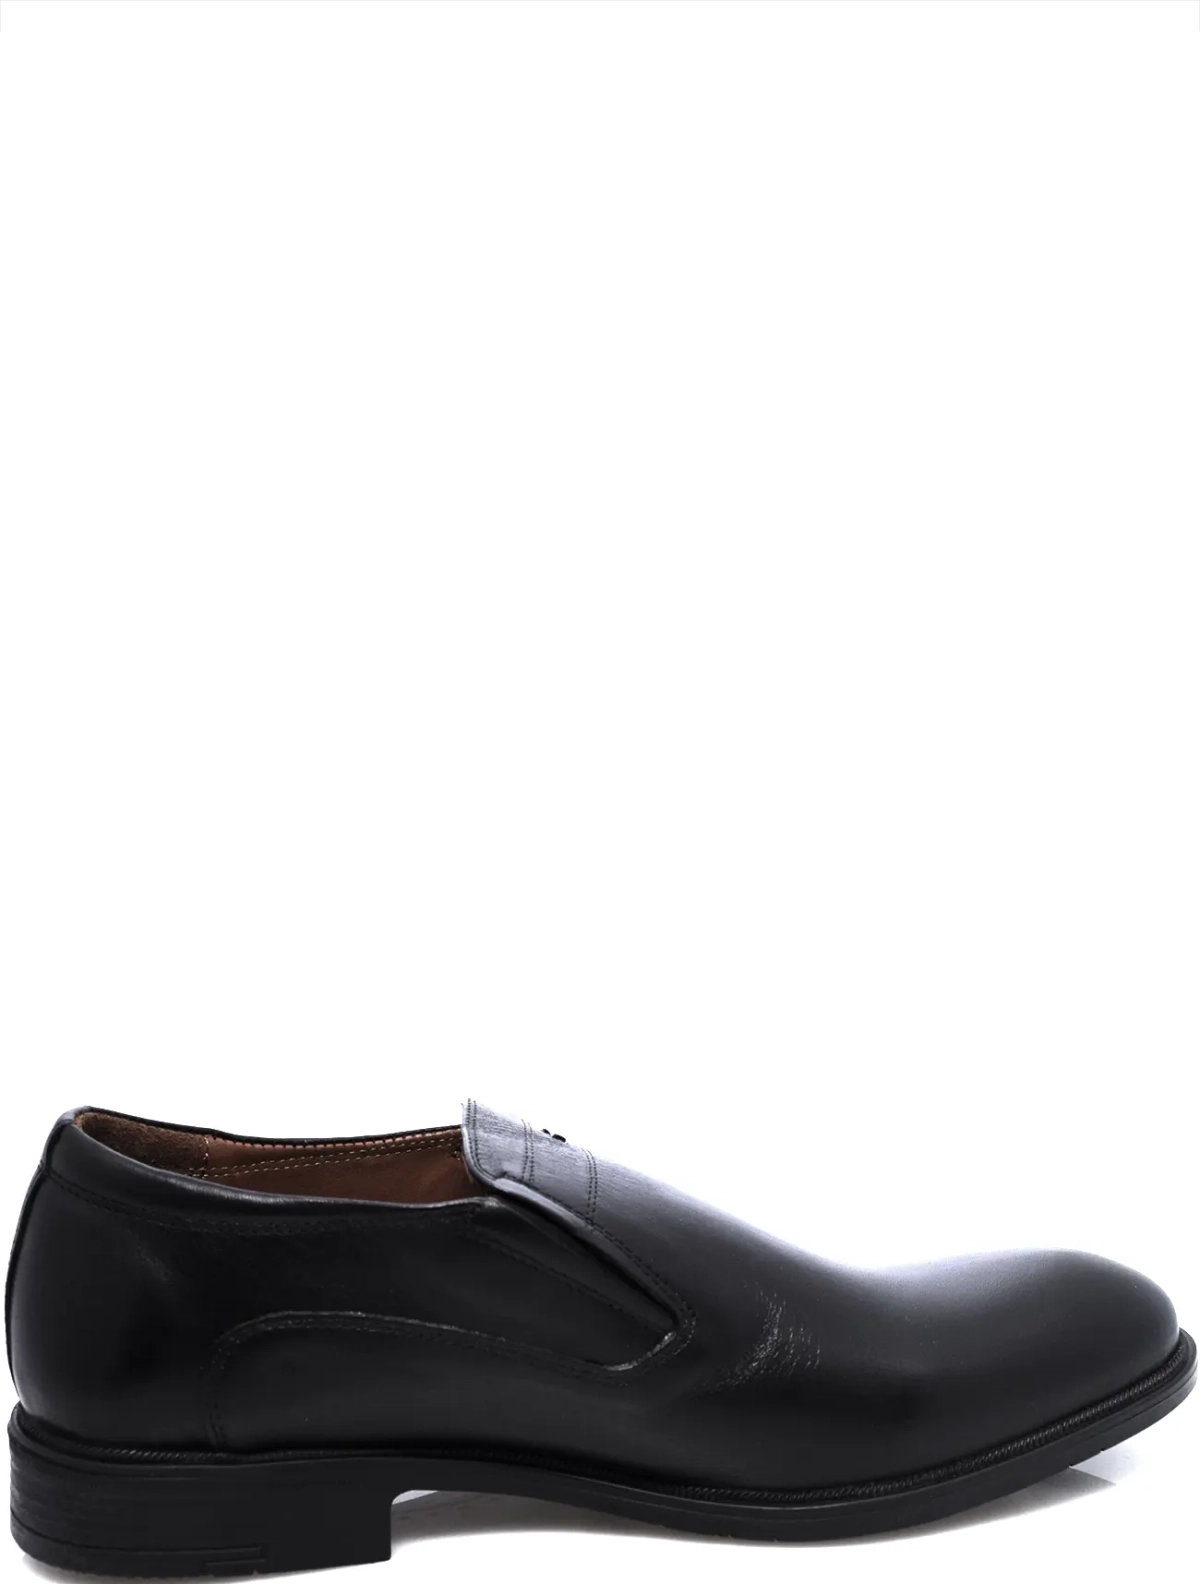 EDERRO 52-1365-228 мужские туфли